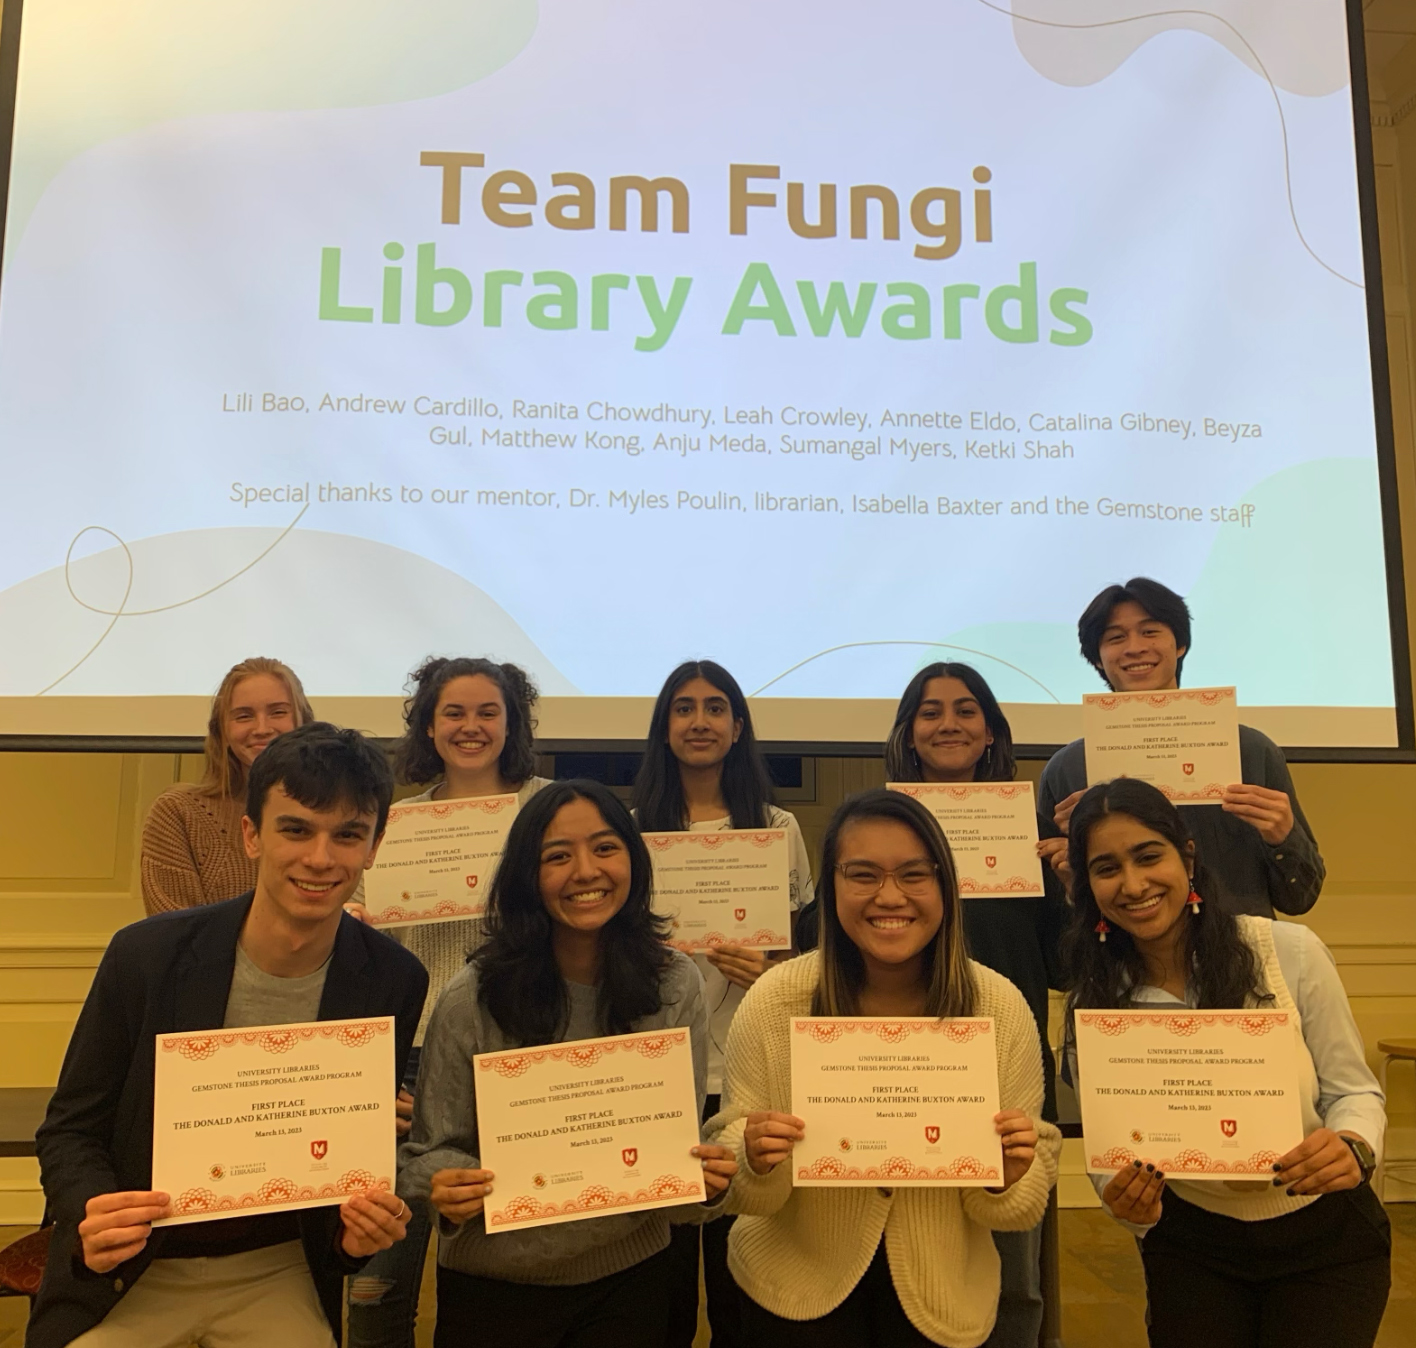 "Team Fungi at the Library Awards"